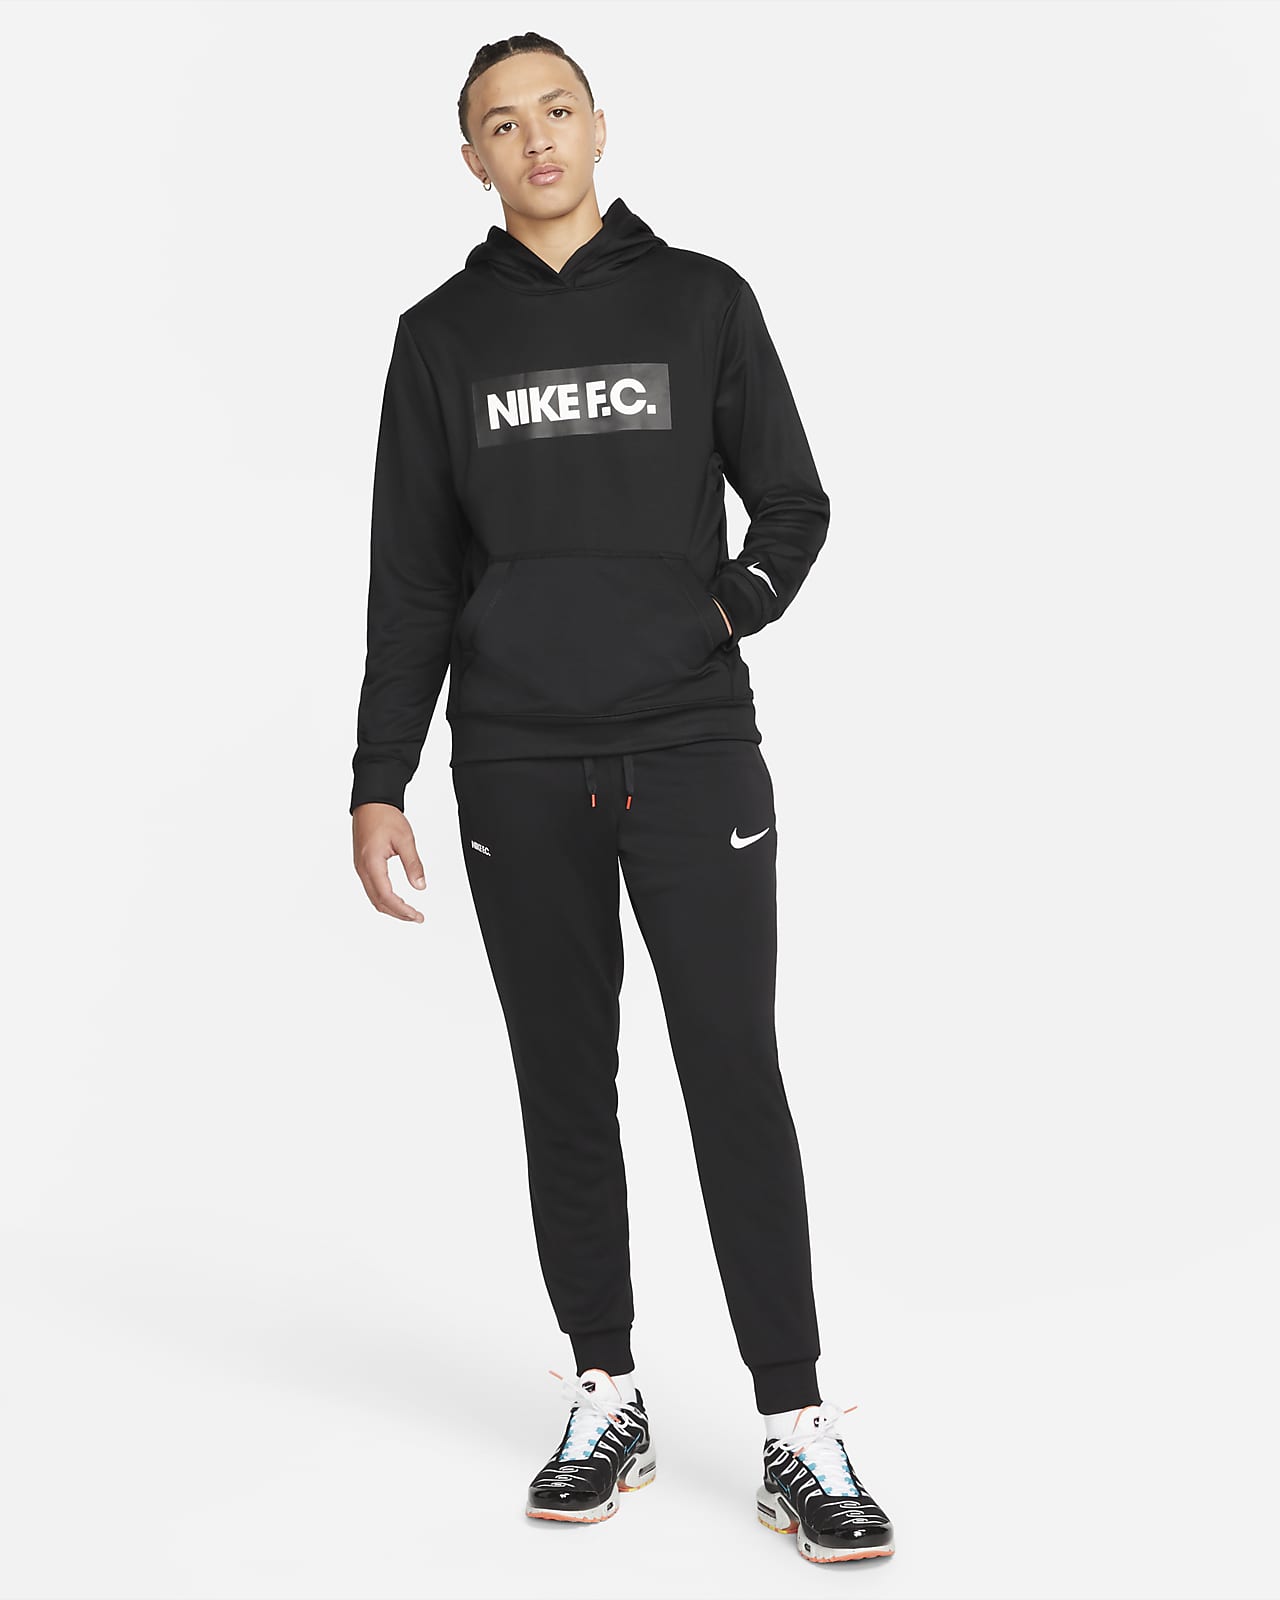 Tacto Universal Apto Nike F.C. Sudadera con capucha de fútbol - Hombre. Nike ES